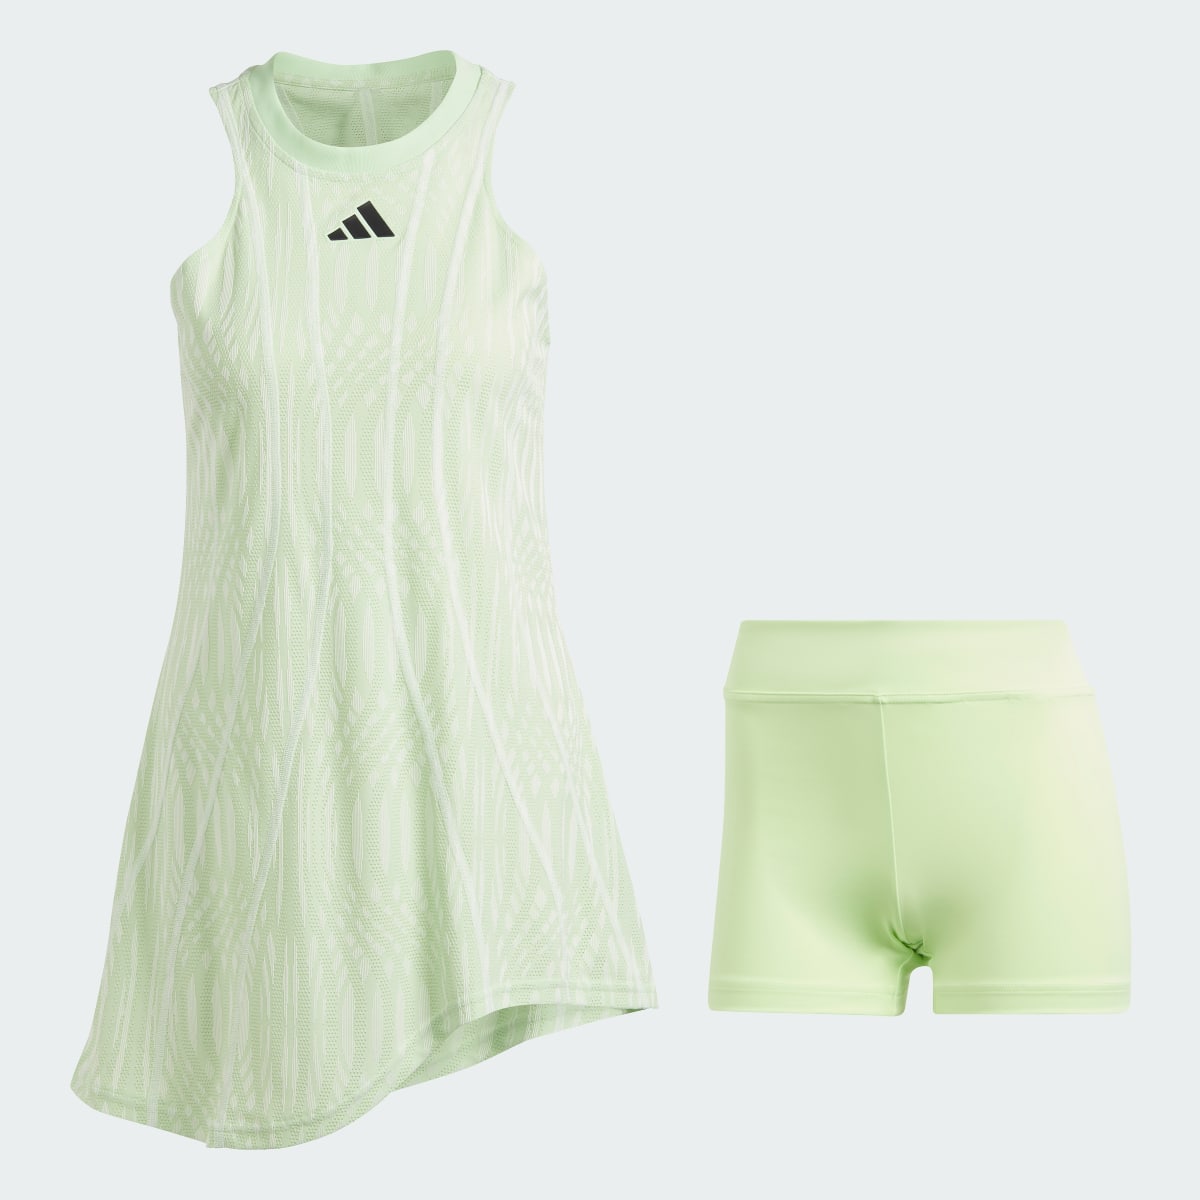 Adidas Tennis Airchill Pro Dress. 5